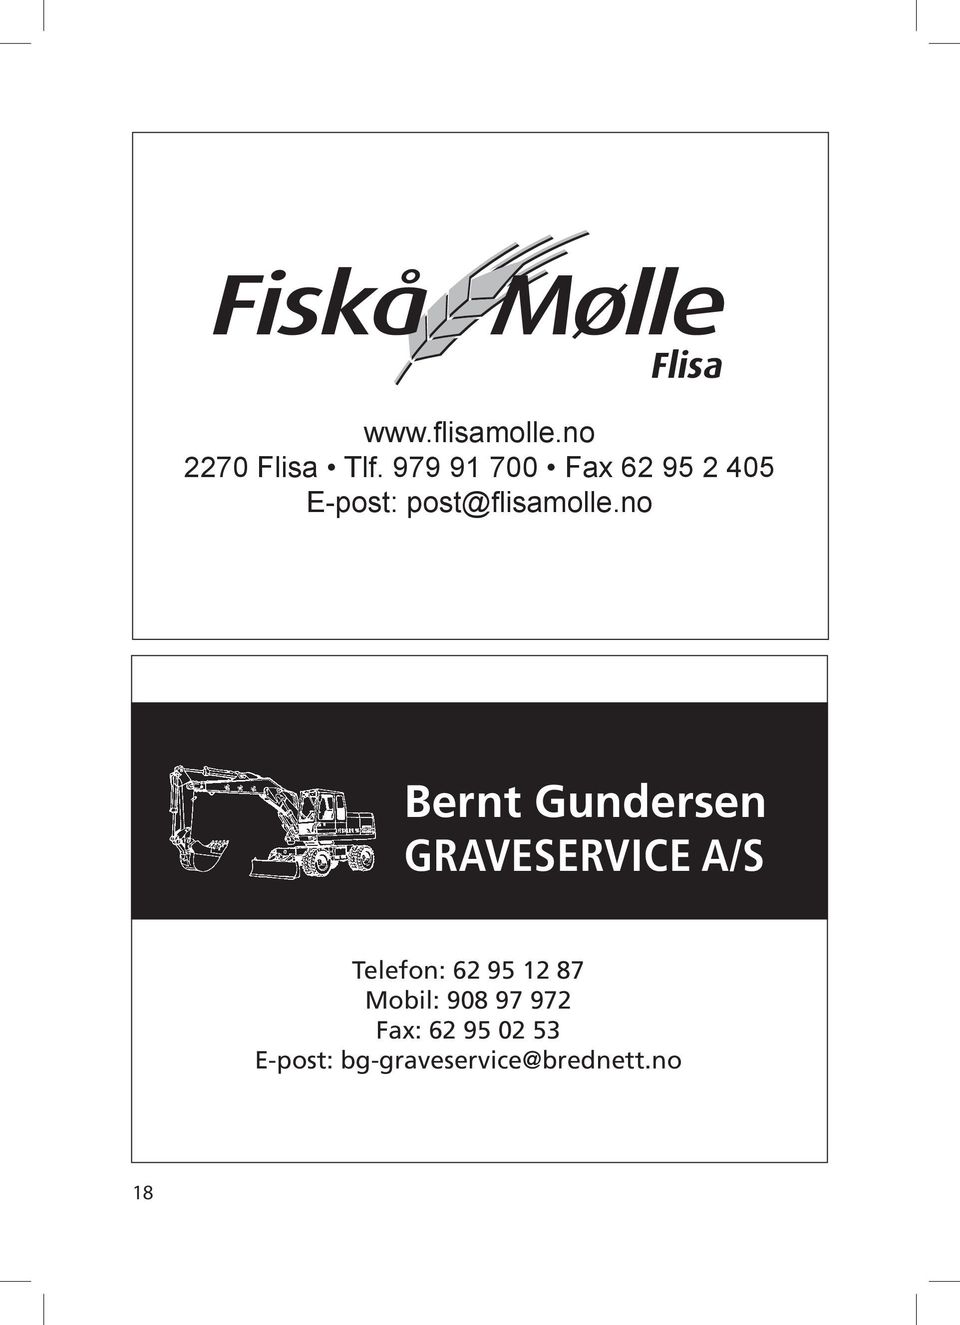 no Bernt Gundersen graveservice A/s 18 Telefon: 62 95 12 87 Mobil: 908 97 972 Fax: